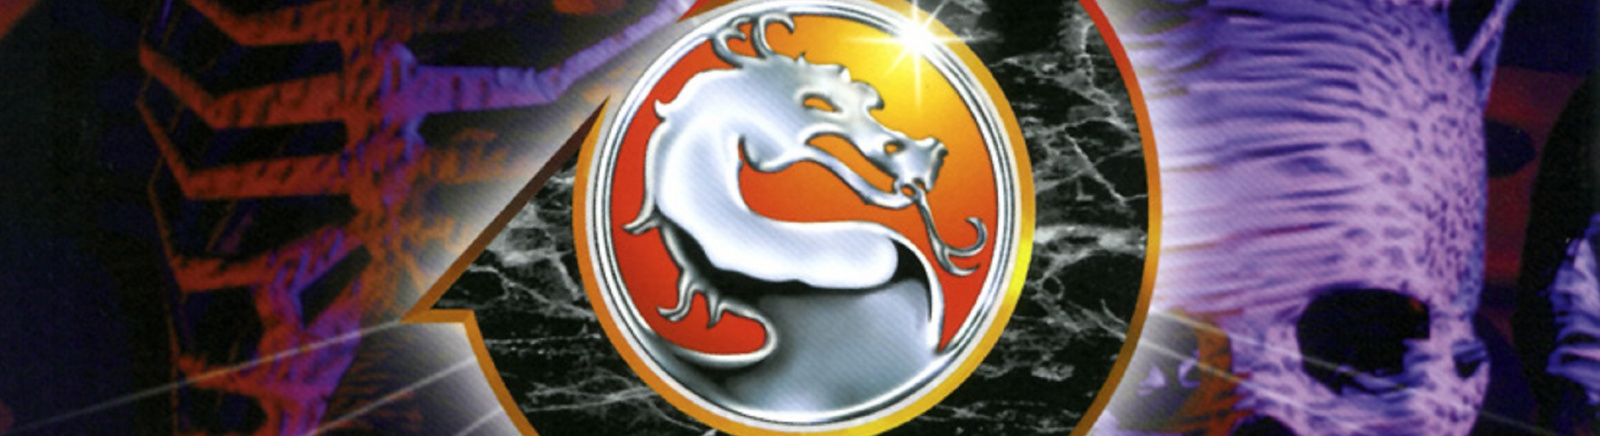 Дата выхода Mortal Kombat 3 (MK 3)  на PC, PlayStation и SNES в России и во всем мире